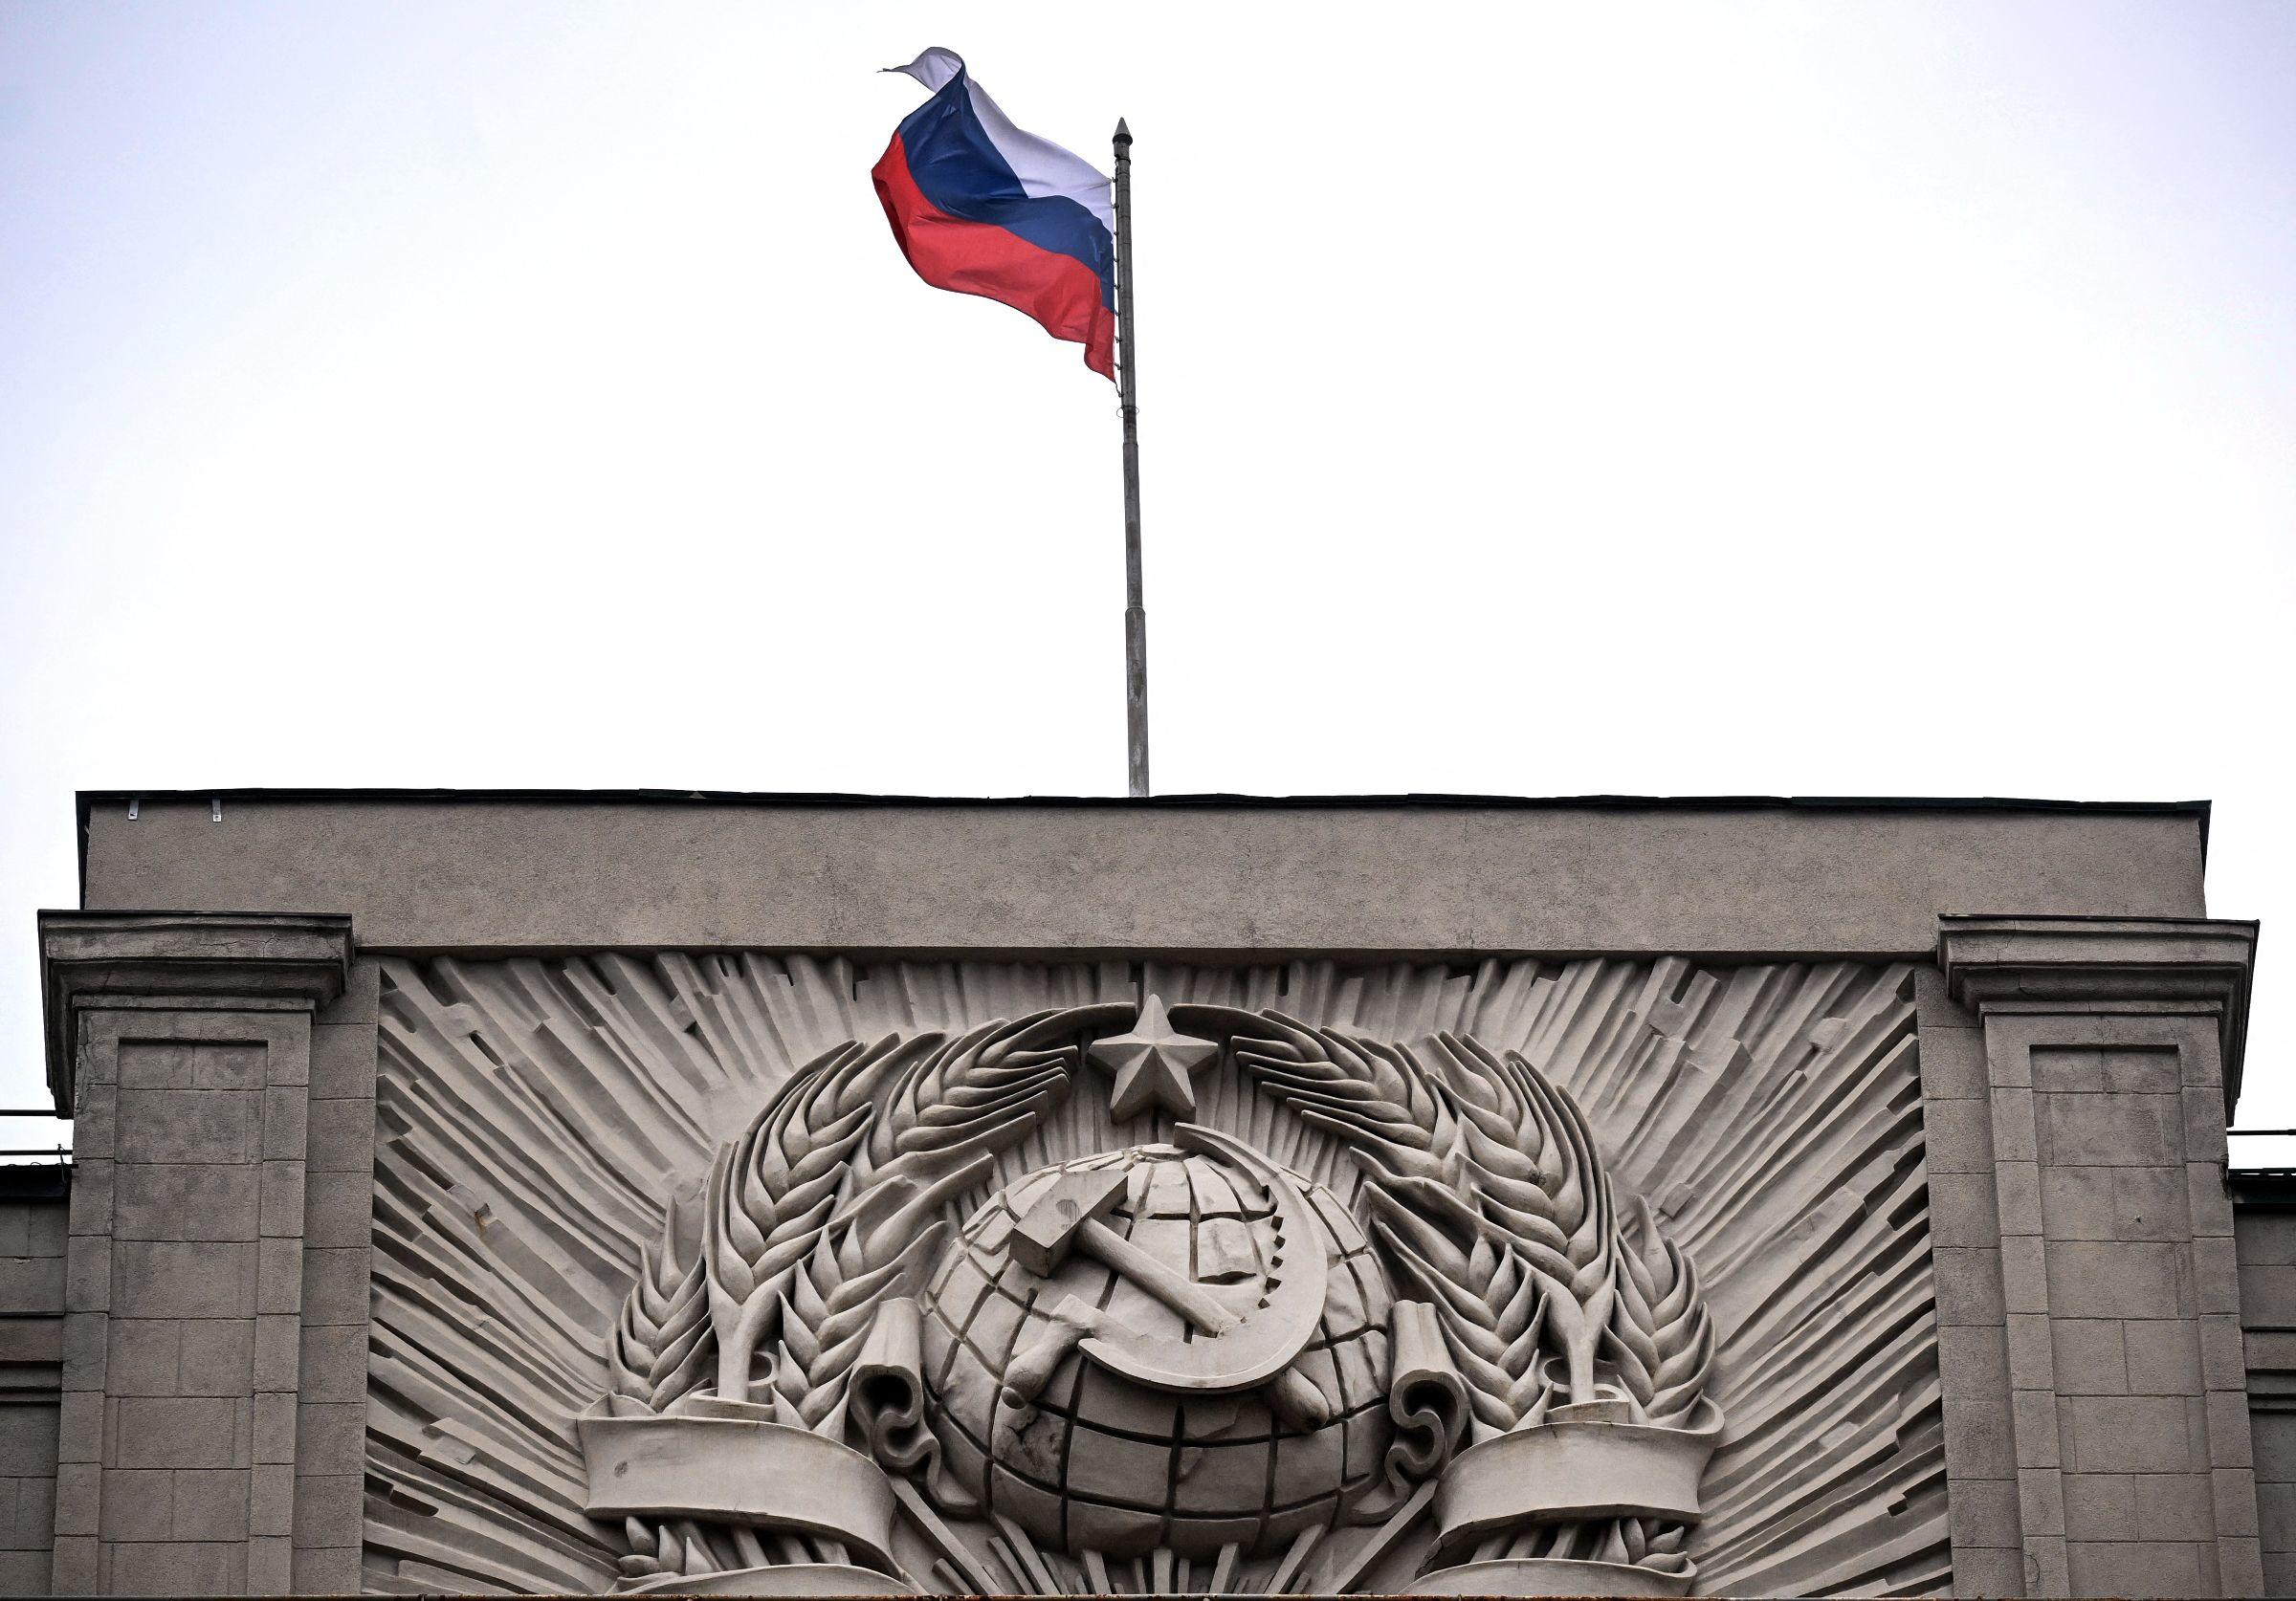 L'ambassade de Russie en France a appelé Paris à « mettre fin » à une « campagne d’information antirusse infondée et injustifiée ». (Illustration) AFP/Natalia KOLESNIKOVA